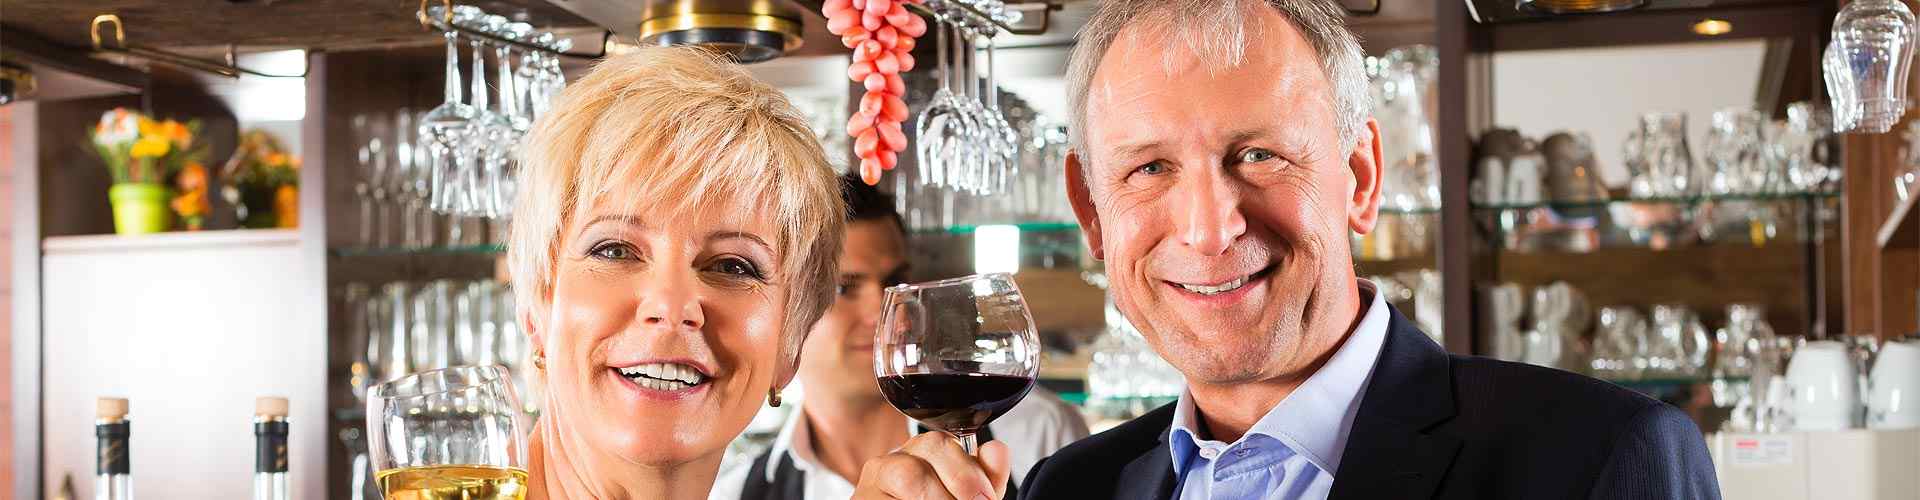 Restaurantes para jubilaciones 2019 en Elda